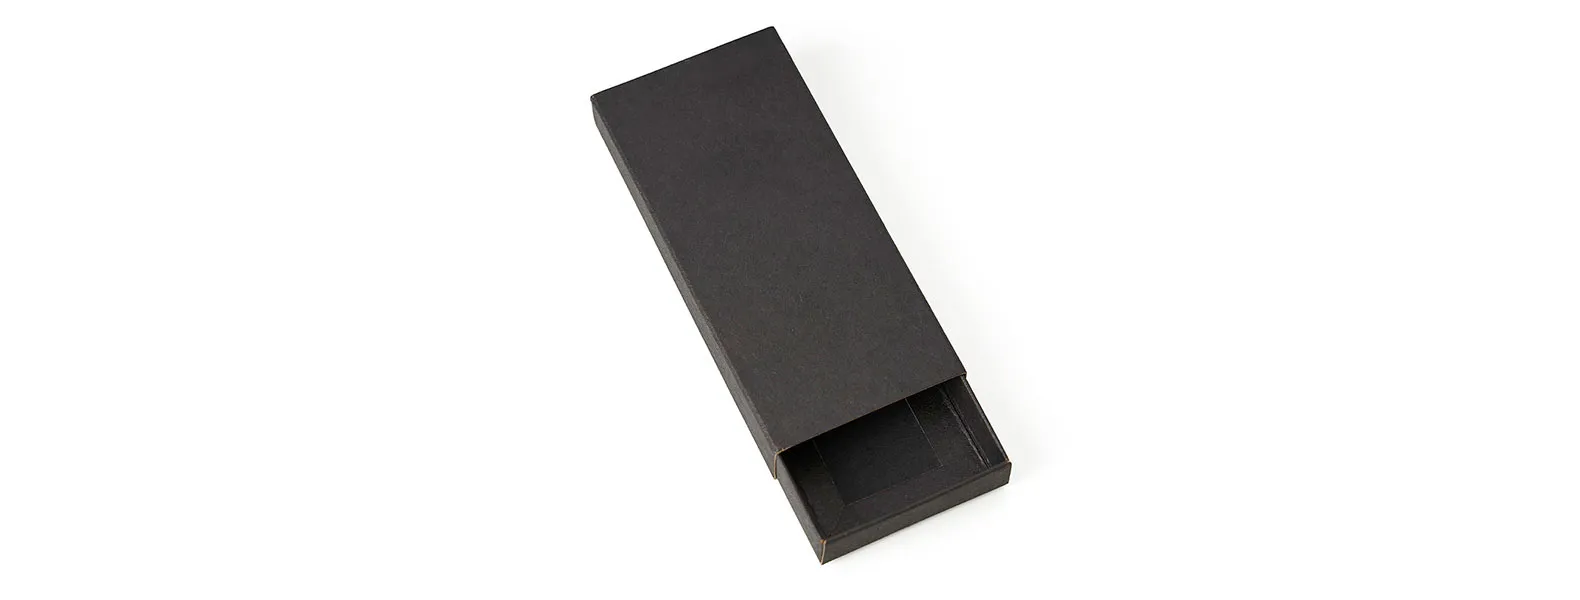 Confeccionado em metal cromado fosco, possui argola com Ø 3,3cm e está acomodado em uma embalagem interna aveludada e caixa kraft com tampa fechada em cordão elástico preto para presente.